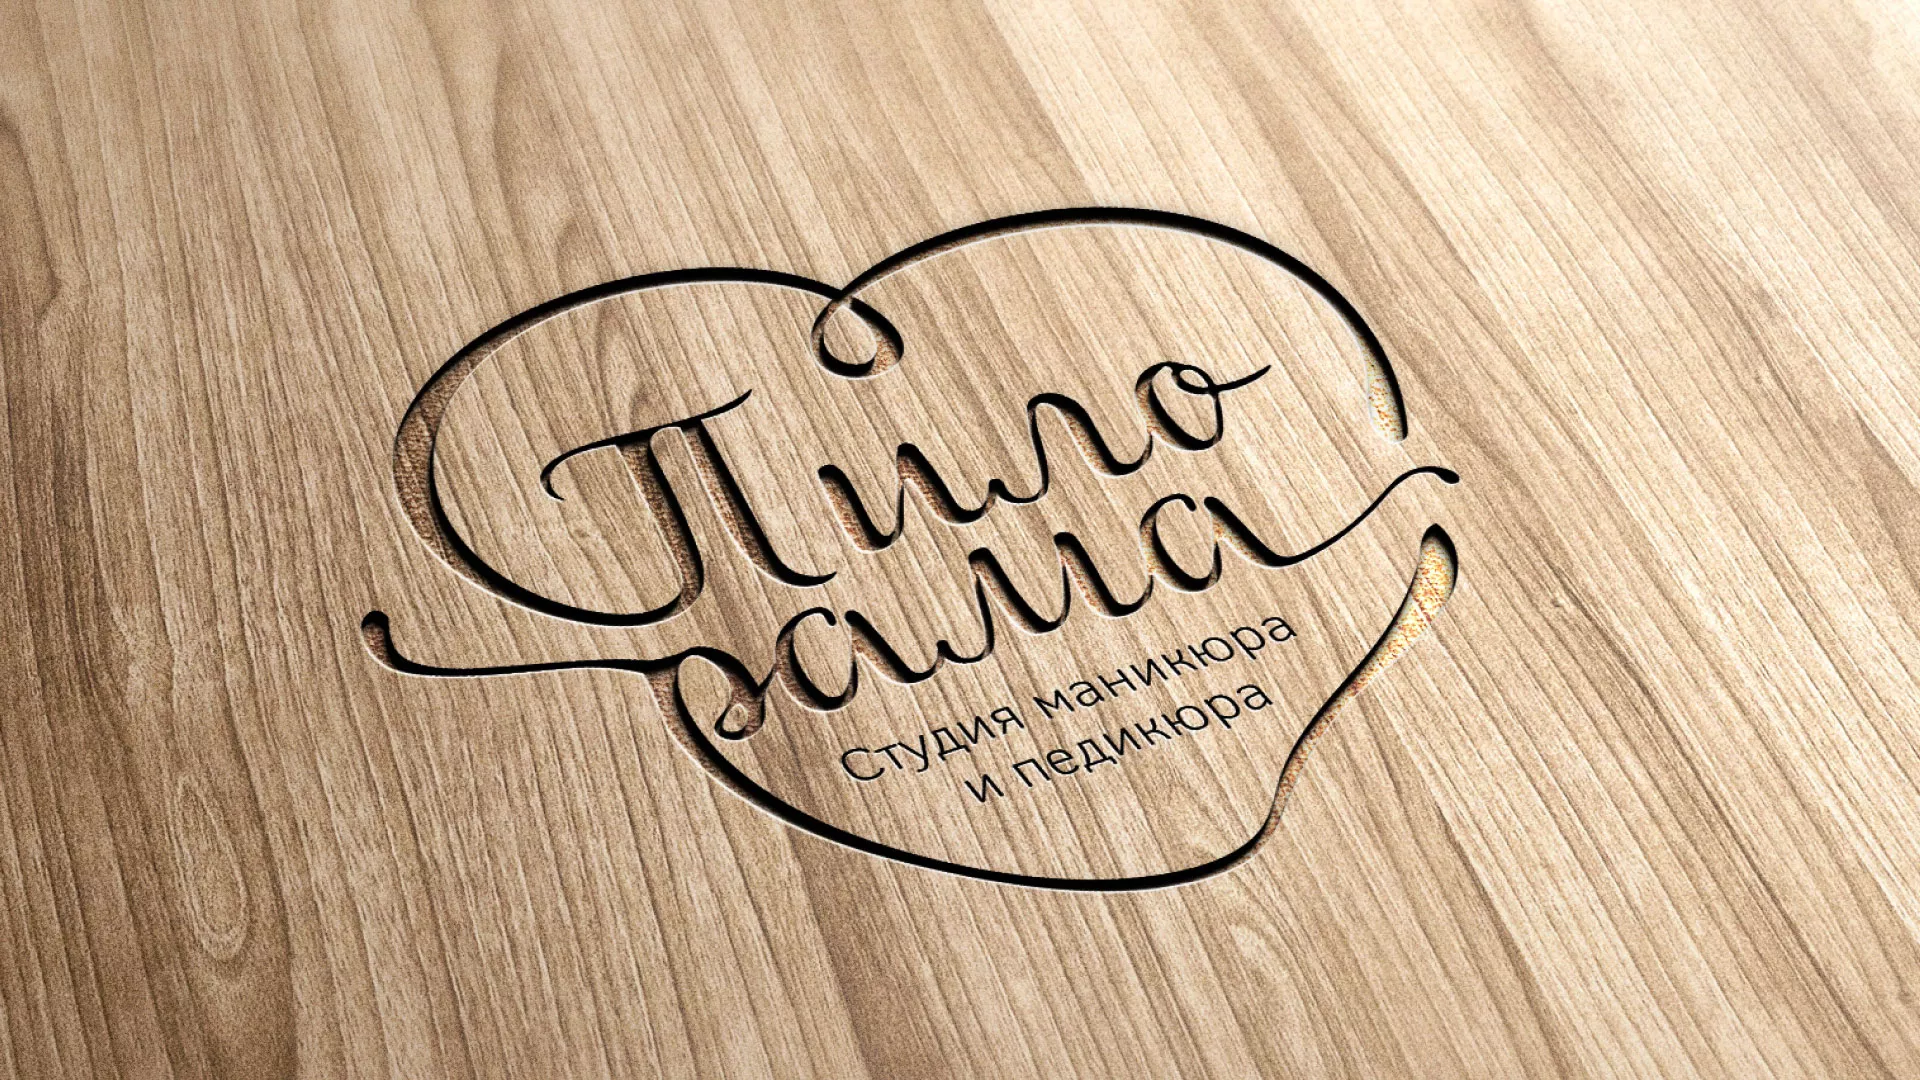 Разработка логотипа студии маникюра и педикюра «Пилорама» в Шенкурске